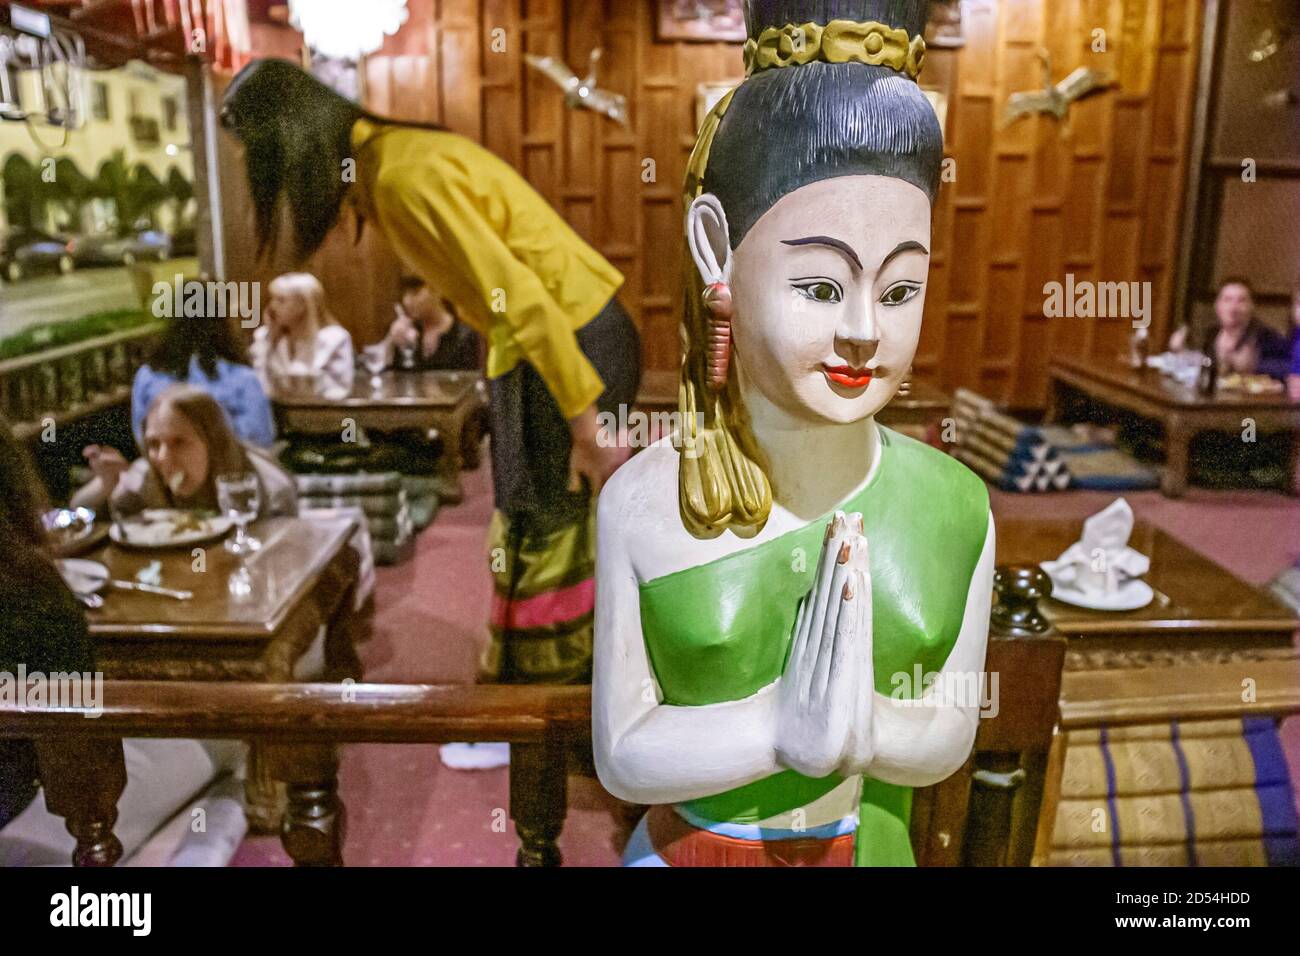 Miami Florida, Coral Gables Bangkok, restaurant restaurants cuisine asiatique, cuisine thaïlandaise orientale à l'intérieur, statue femme Wai Greet Banque D'Images